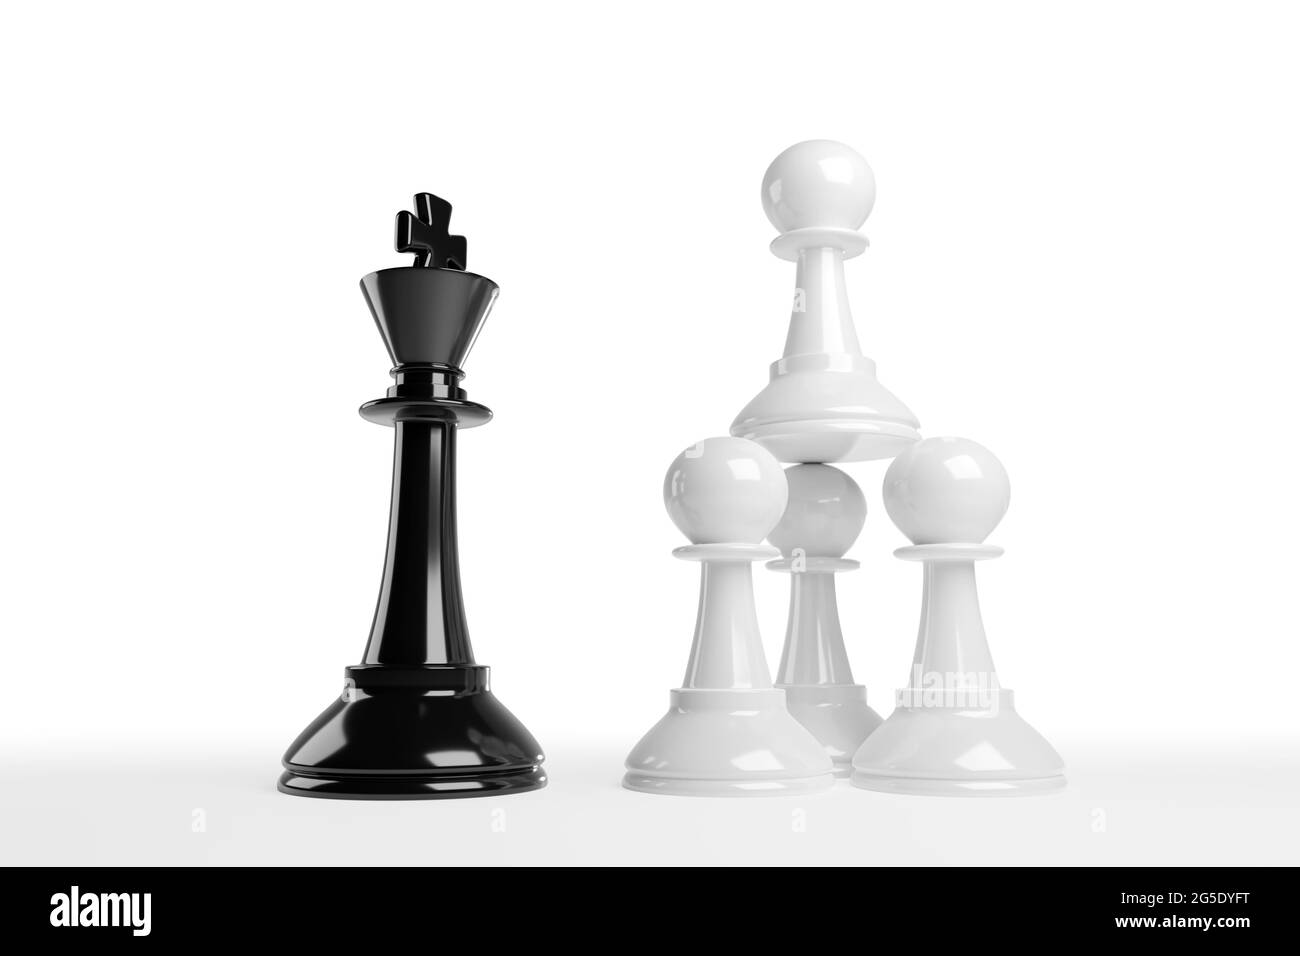 Les pions d'échecs empilés font face à un roi. Concept d'équipe de travail. illustration 3d. Banque D'Images